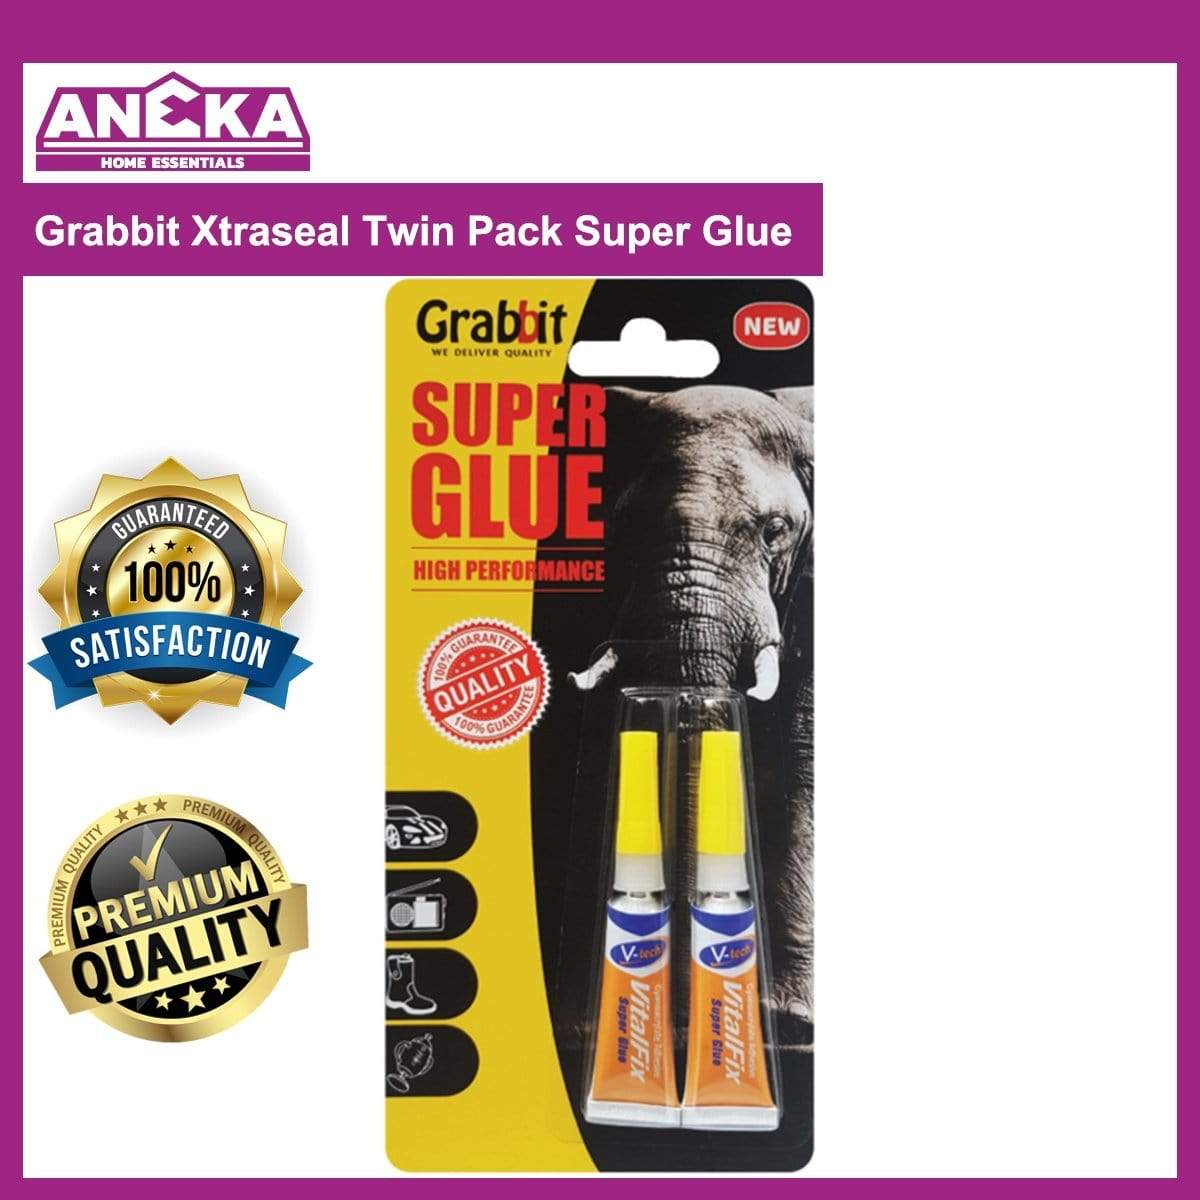 Grabbit Xtraseal Twin Pack Super Glue (2pcs)